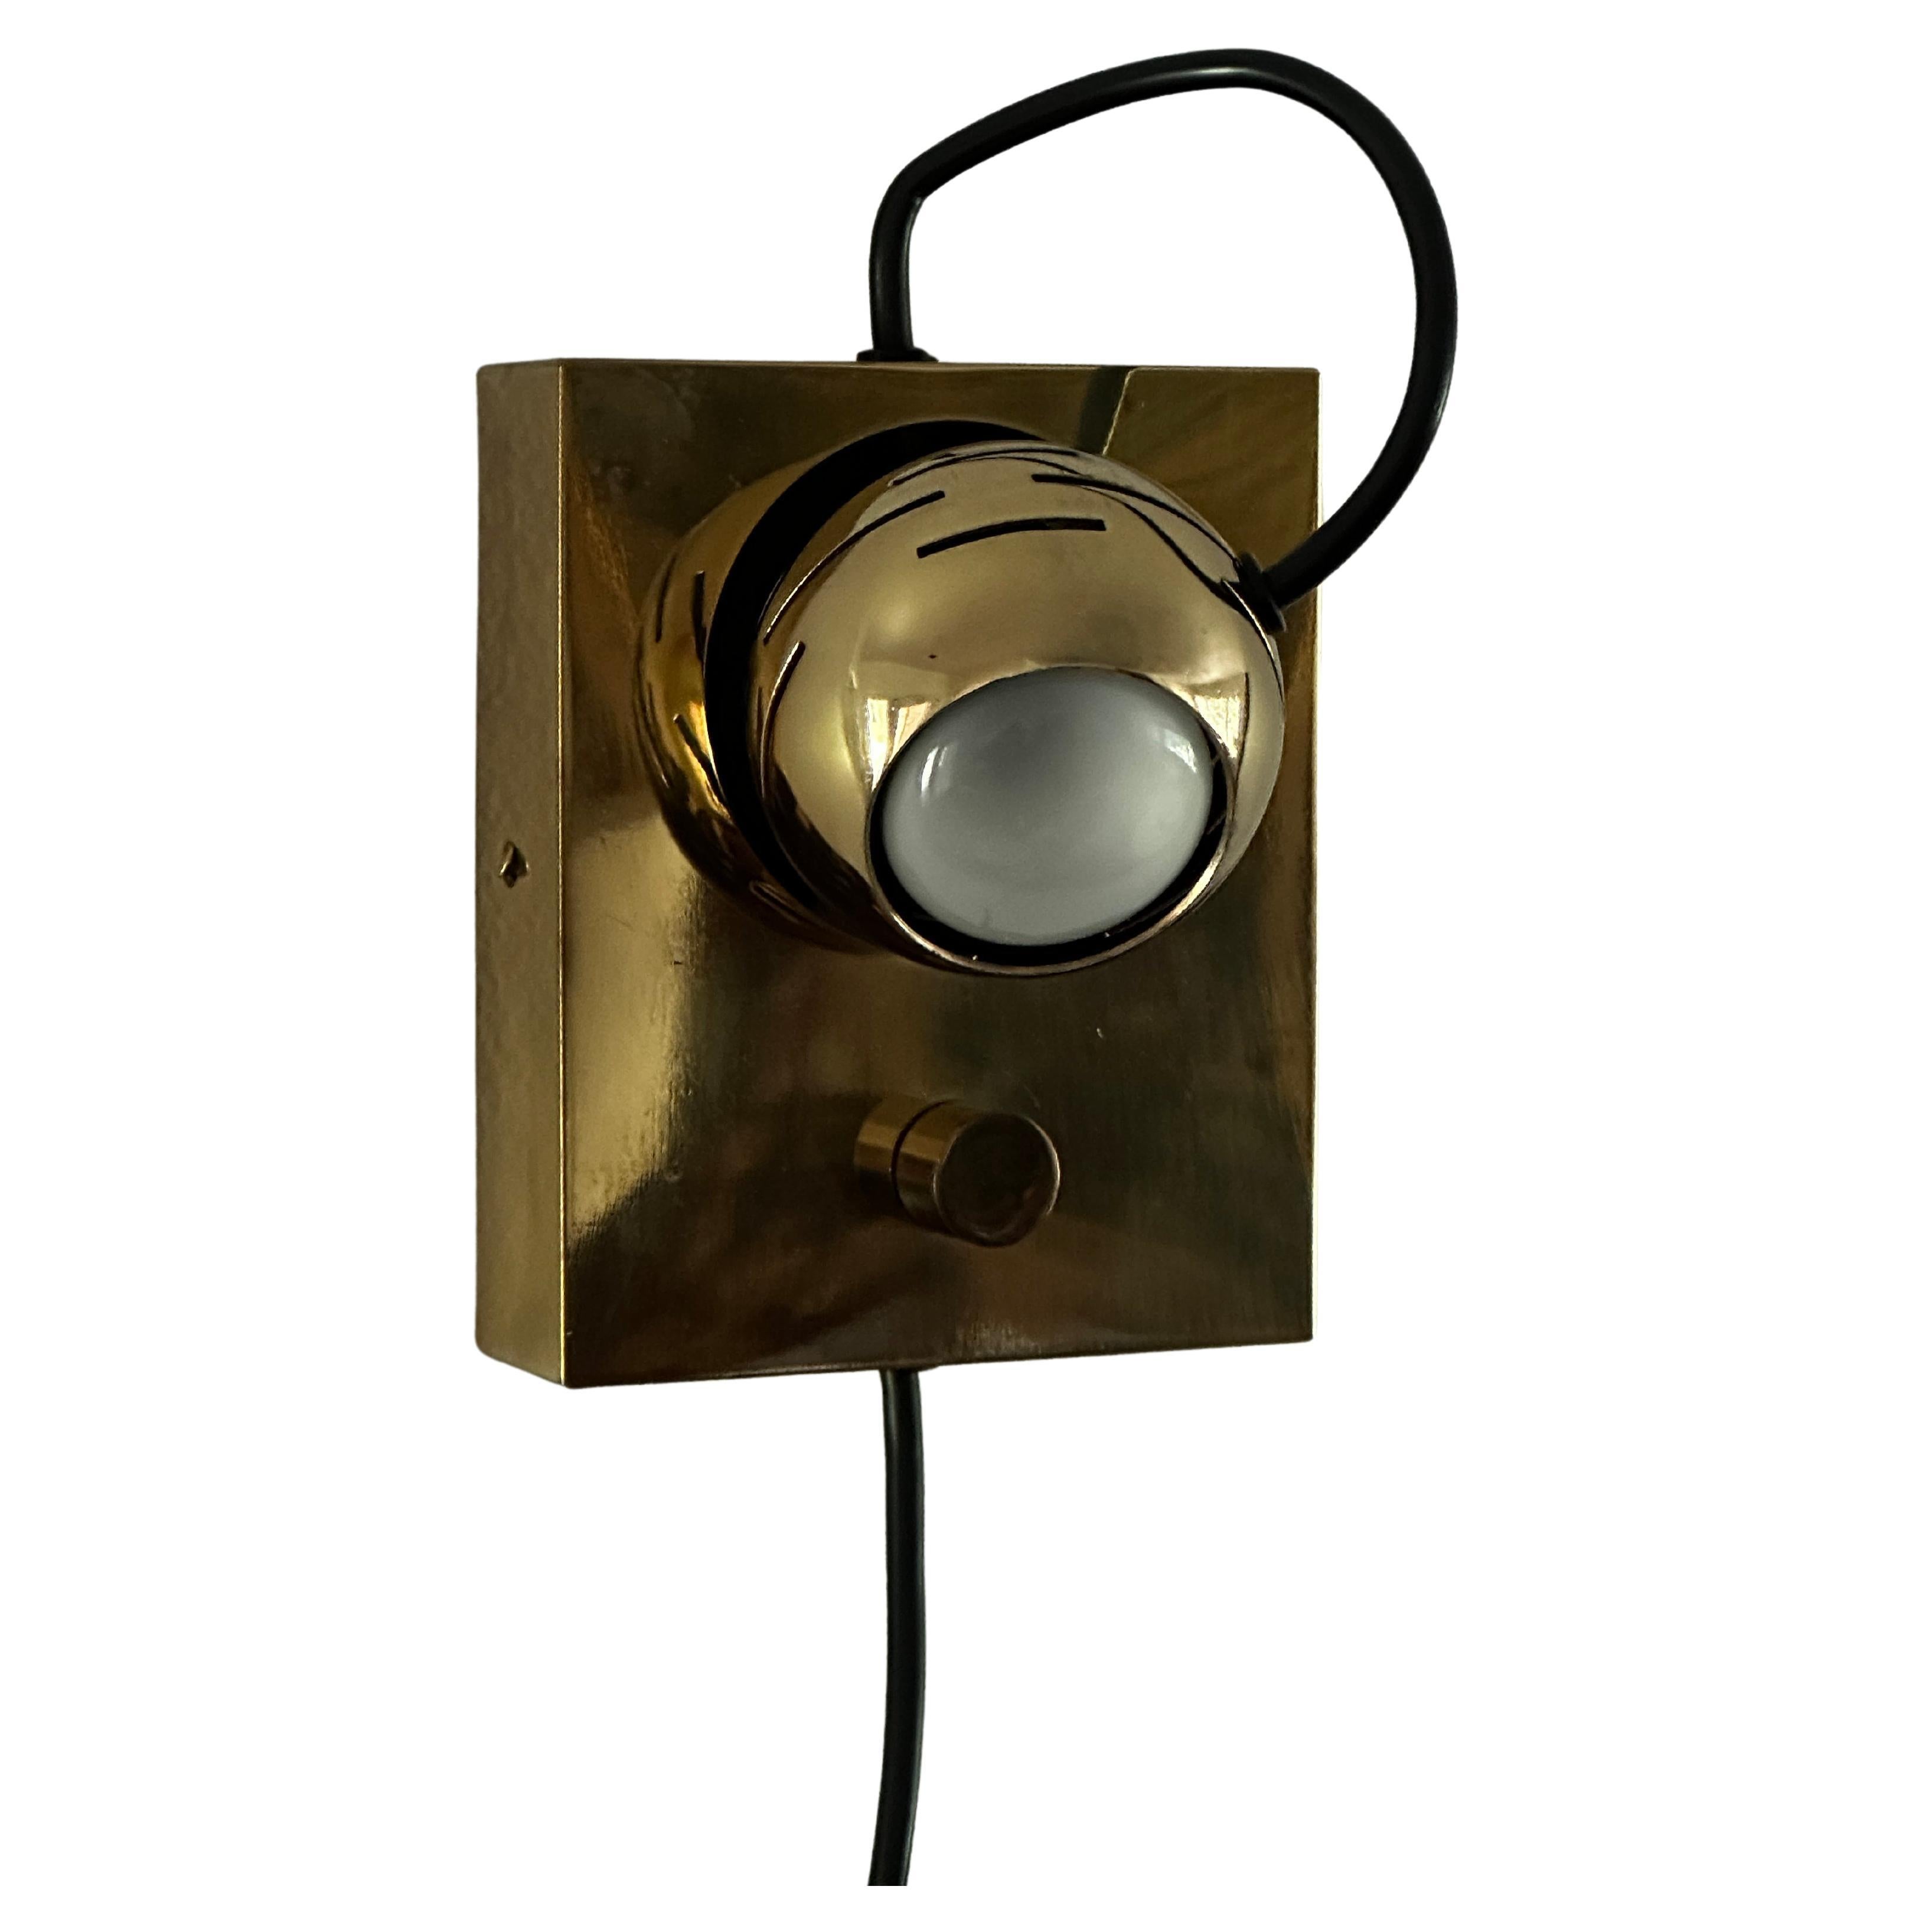 Arredoluce "Eyeball" Wall Lamp For Sale